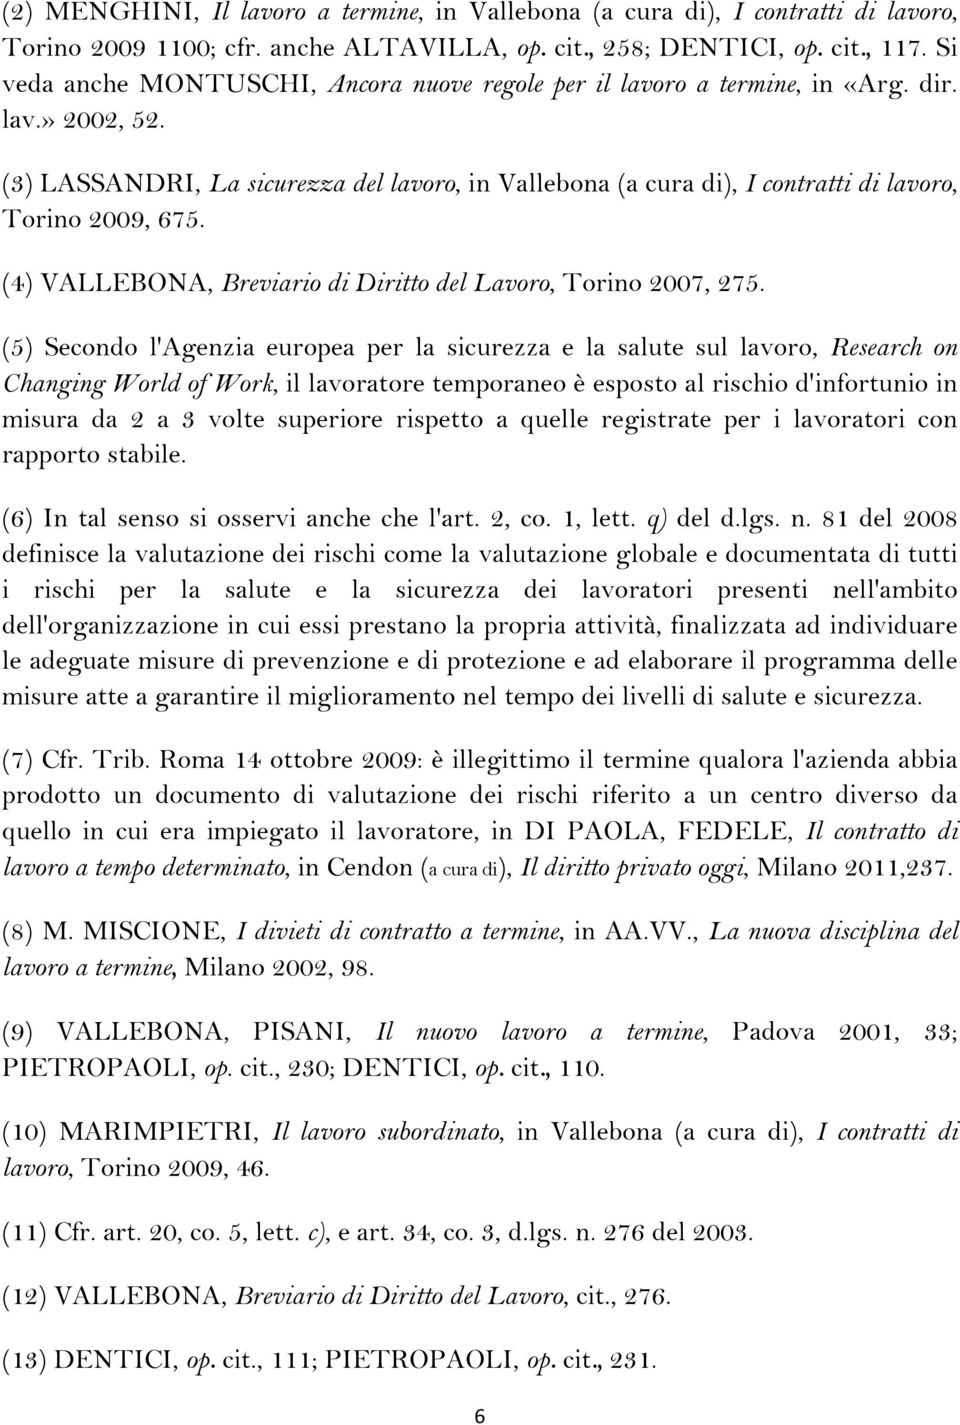 (3) LASSANDRI, La sicurezza del lavoro, in Vallebona (a cura di), I contratti di lavoro, Torino 2009, 675. (4) VALLEBONA, Breviario di Diritto del Lavoro, Torino 2007, 275.